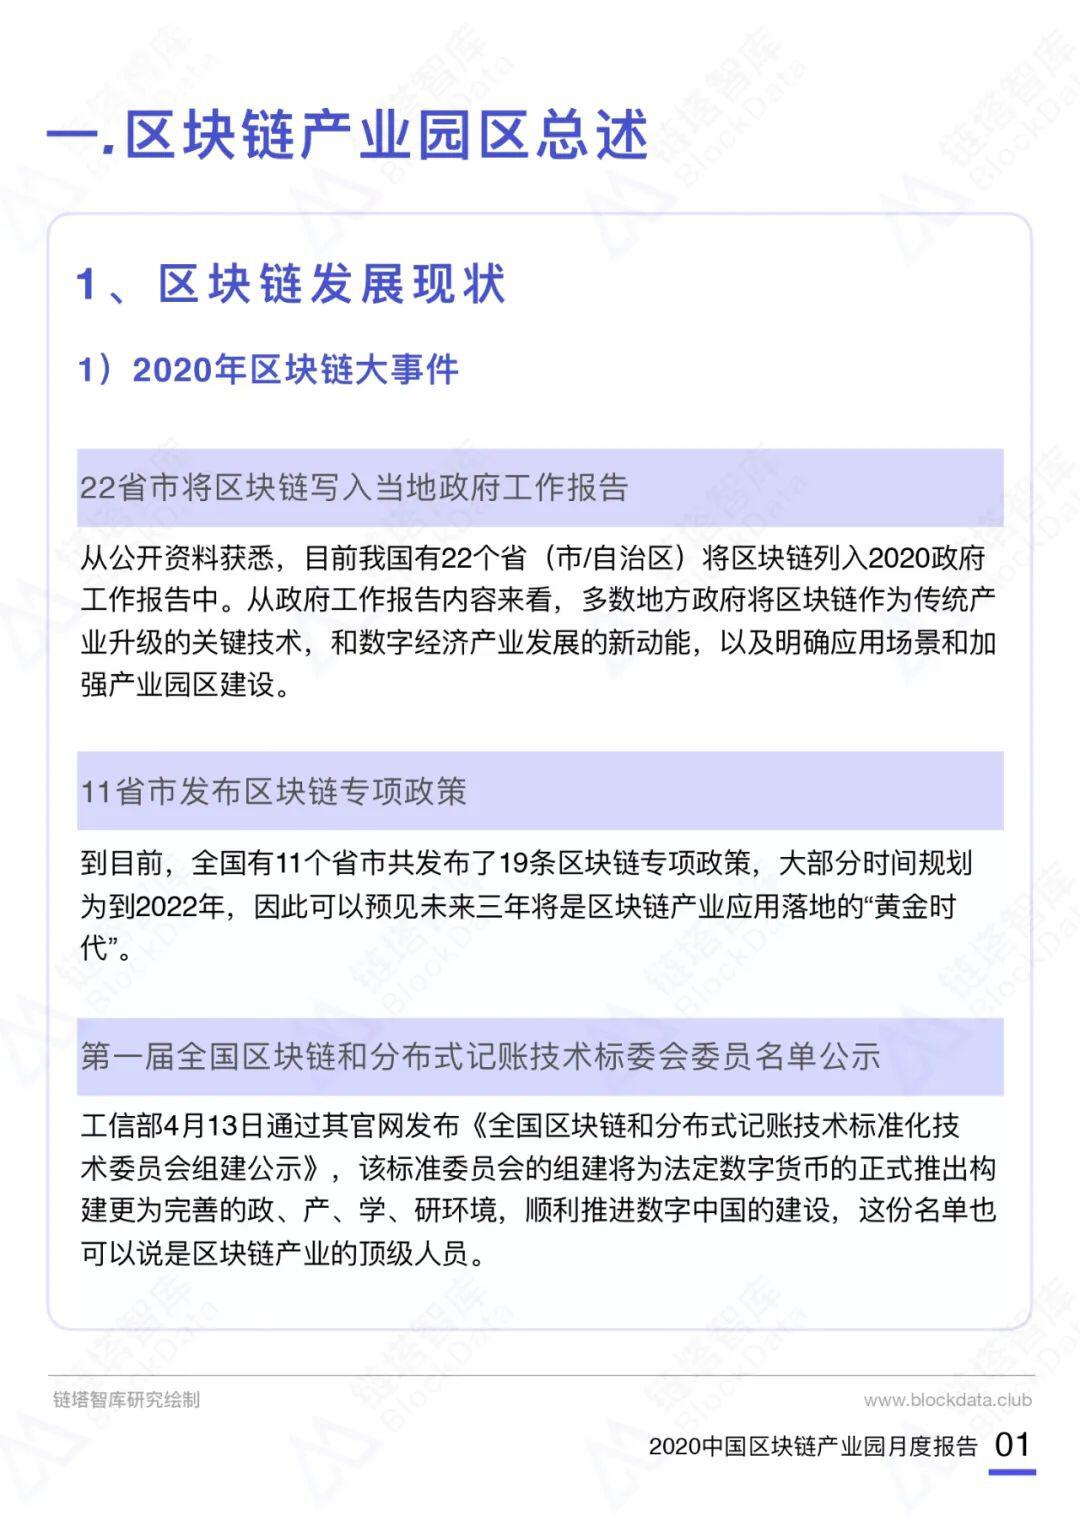 2020中国区块链产业园月度报告（11月）